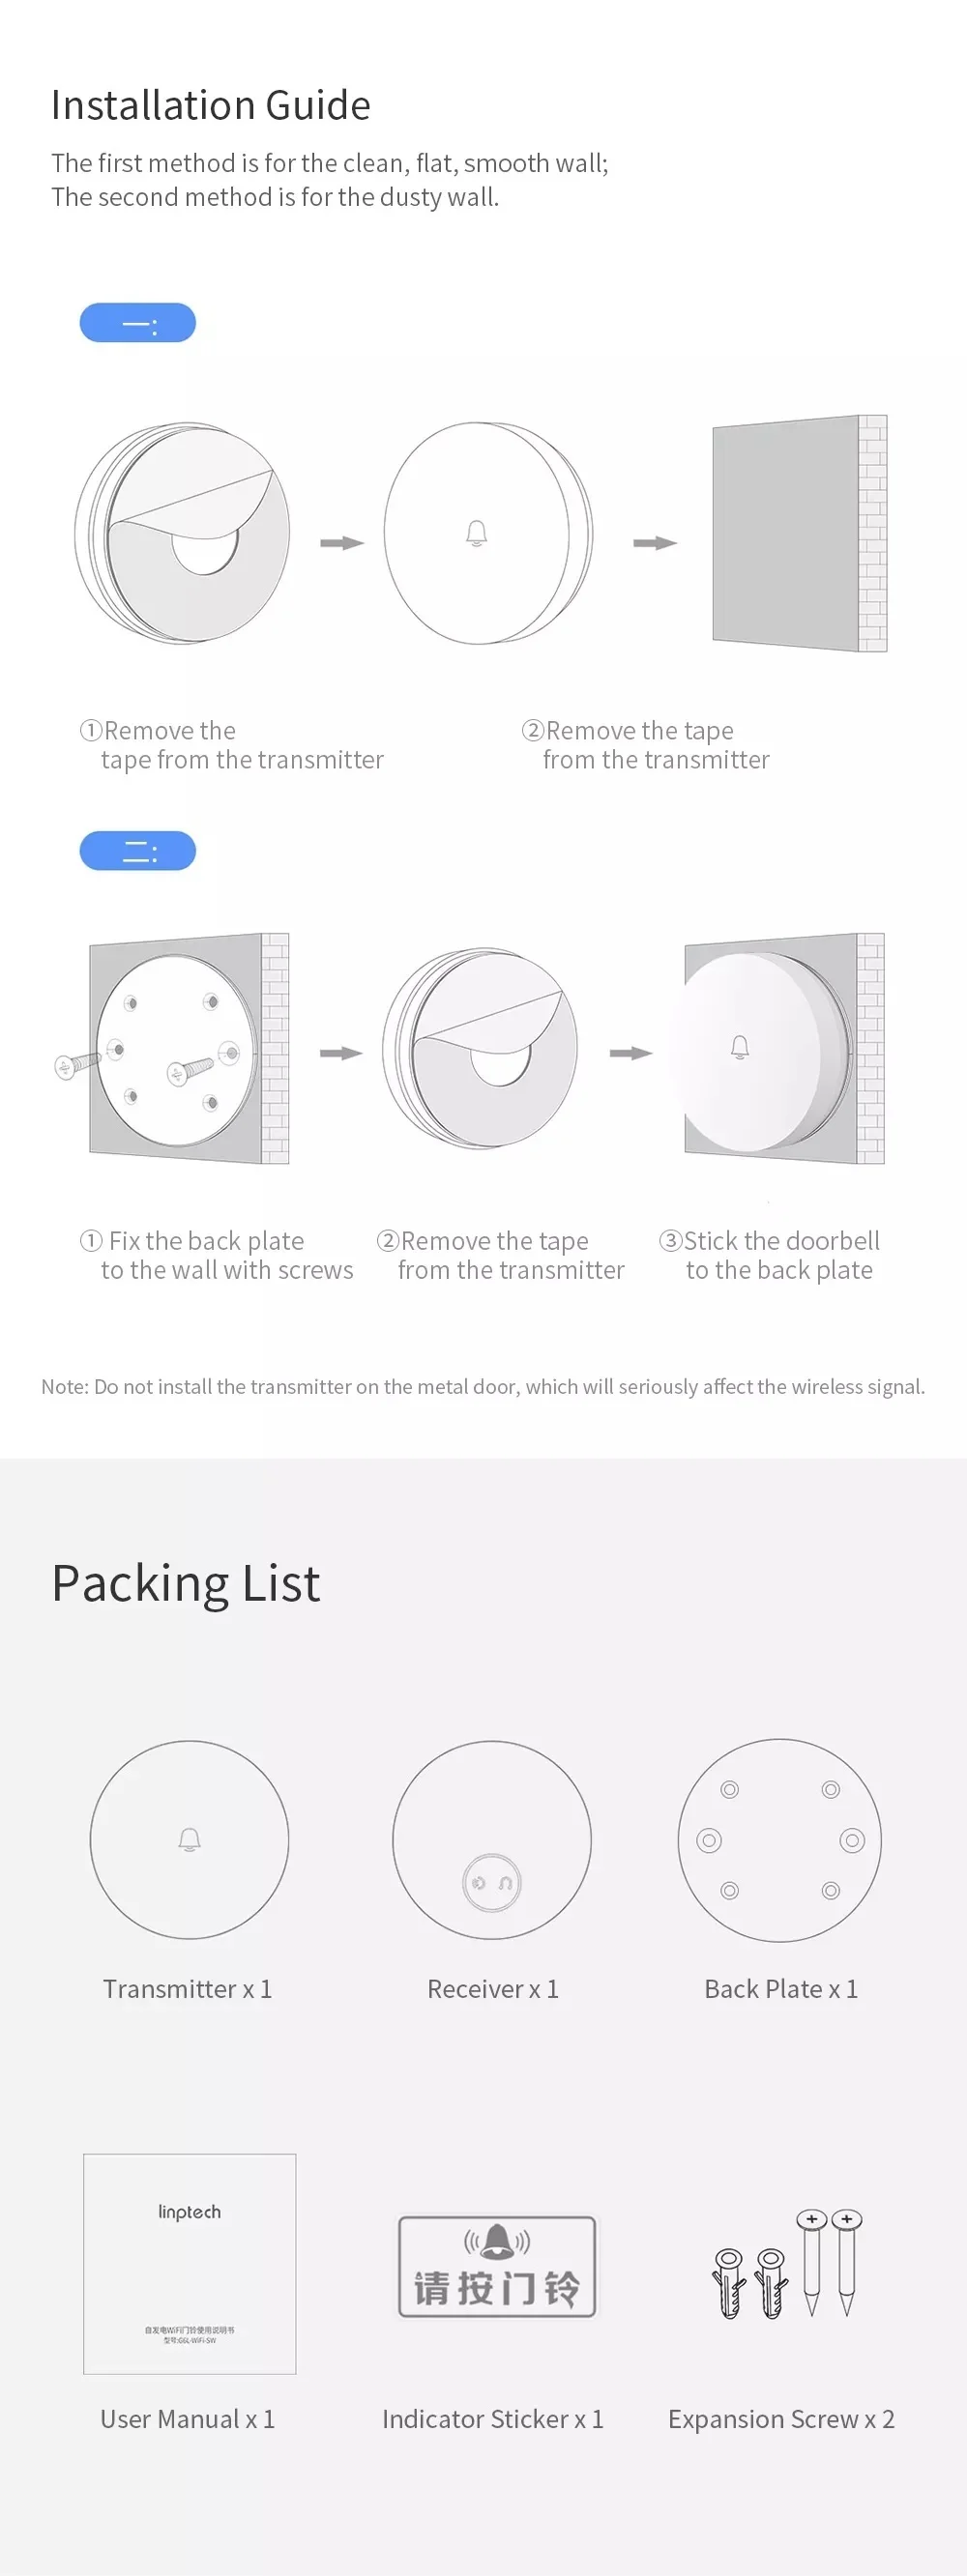 Xiaomi Linptech Wireless Doorbell G4l